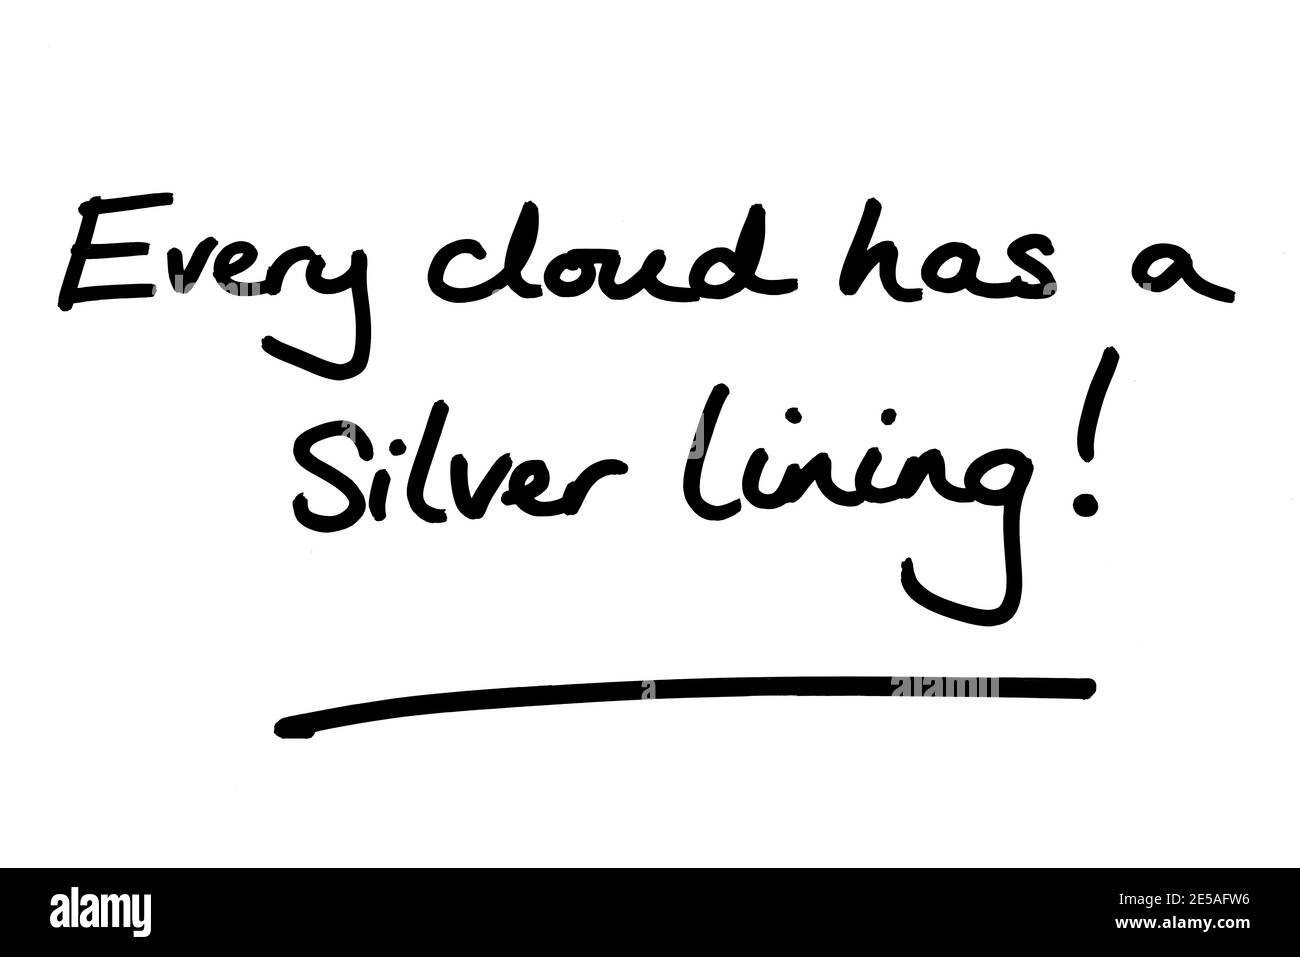 Ogni nuvola ha una fodera argentata! scritto a mano su sfondo bianco. Foto Stock